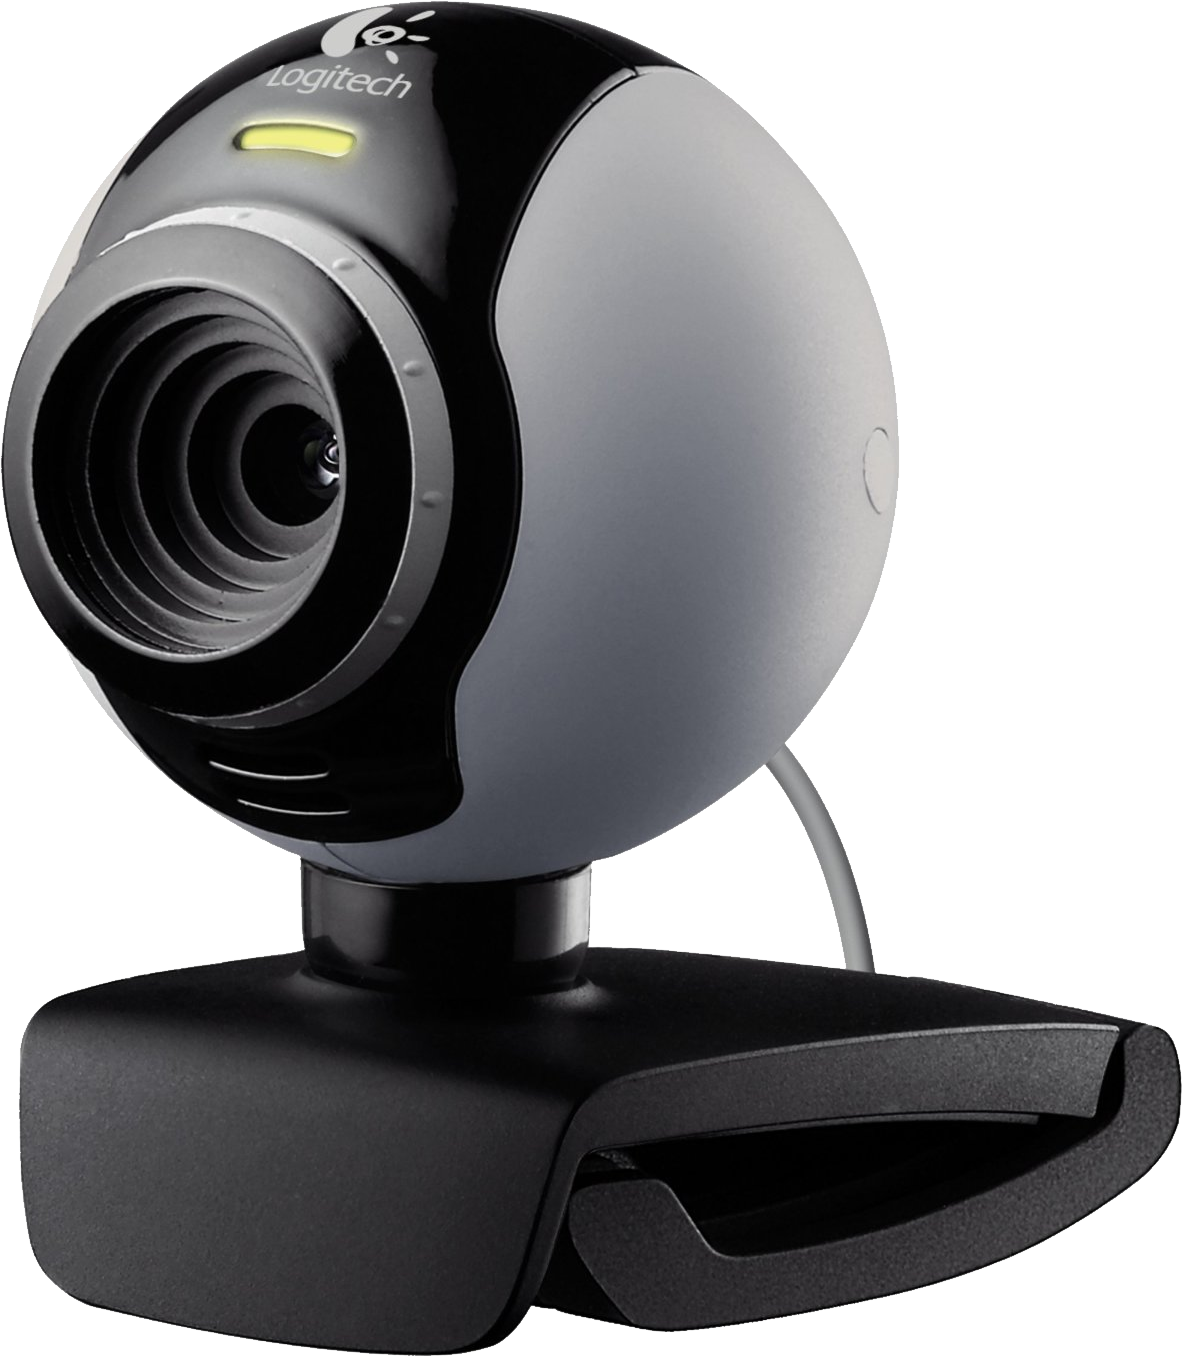 Web Camera, Webcam, Webcamera